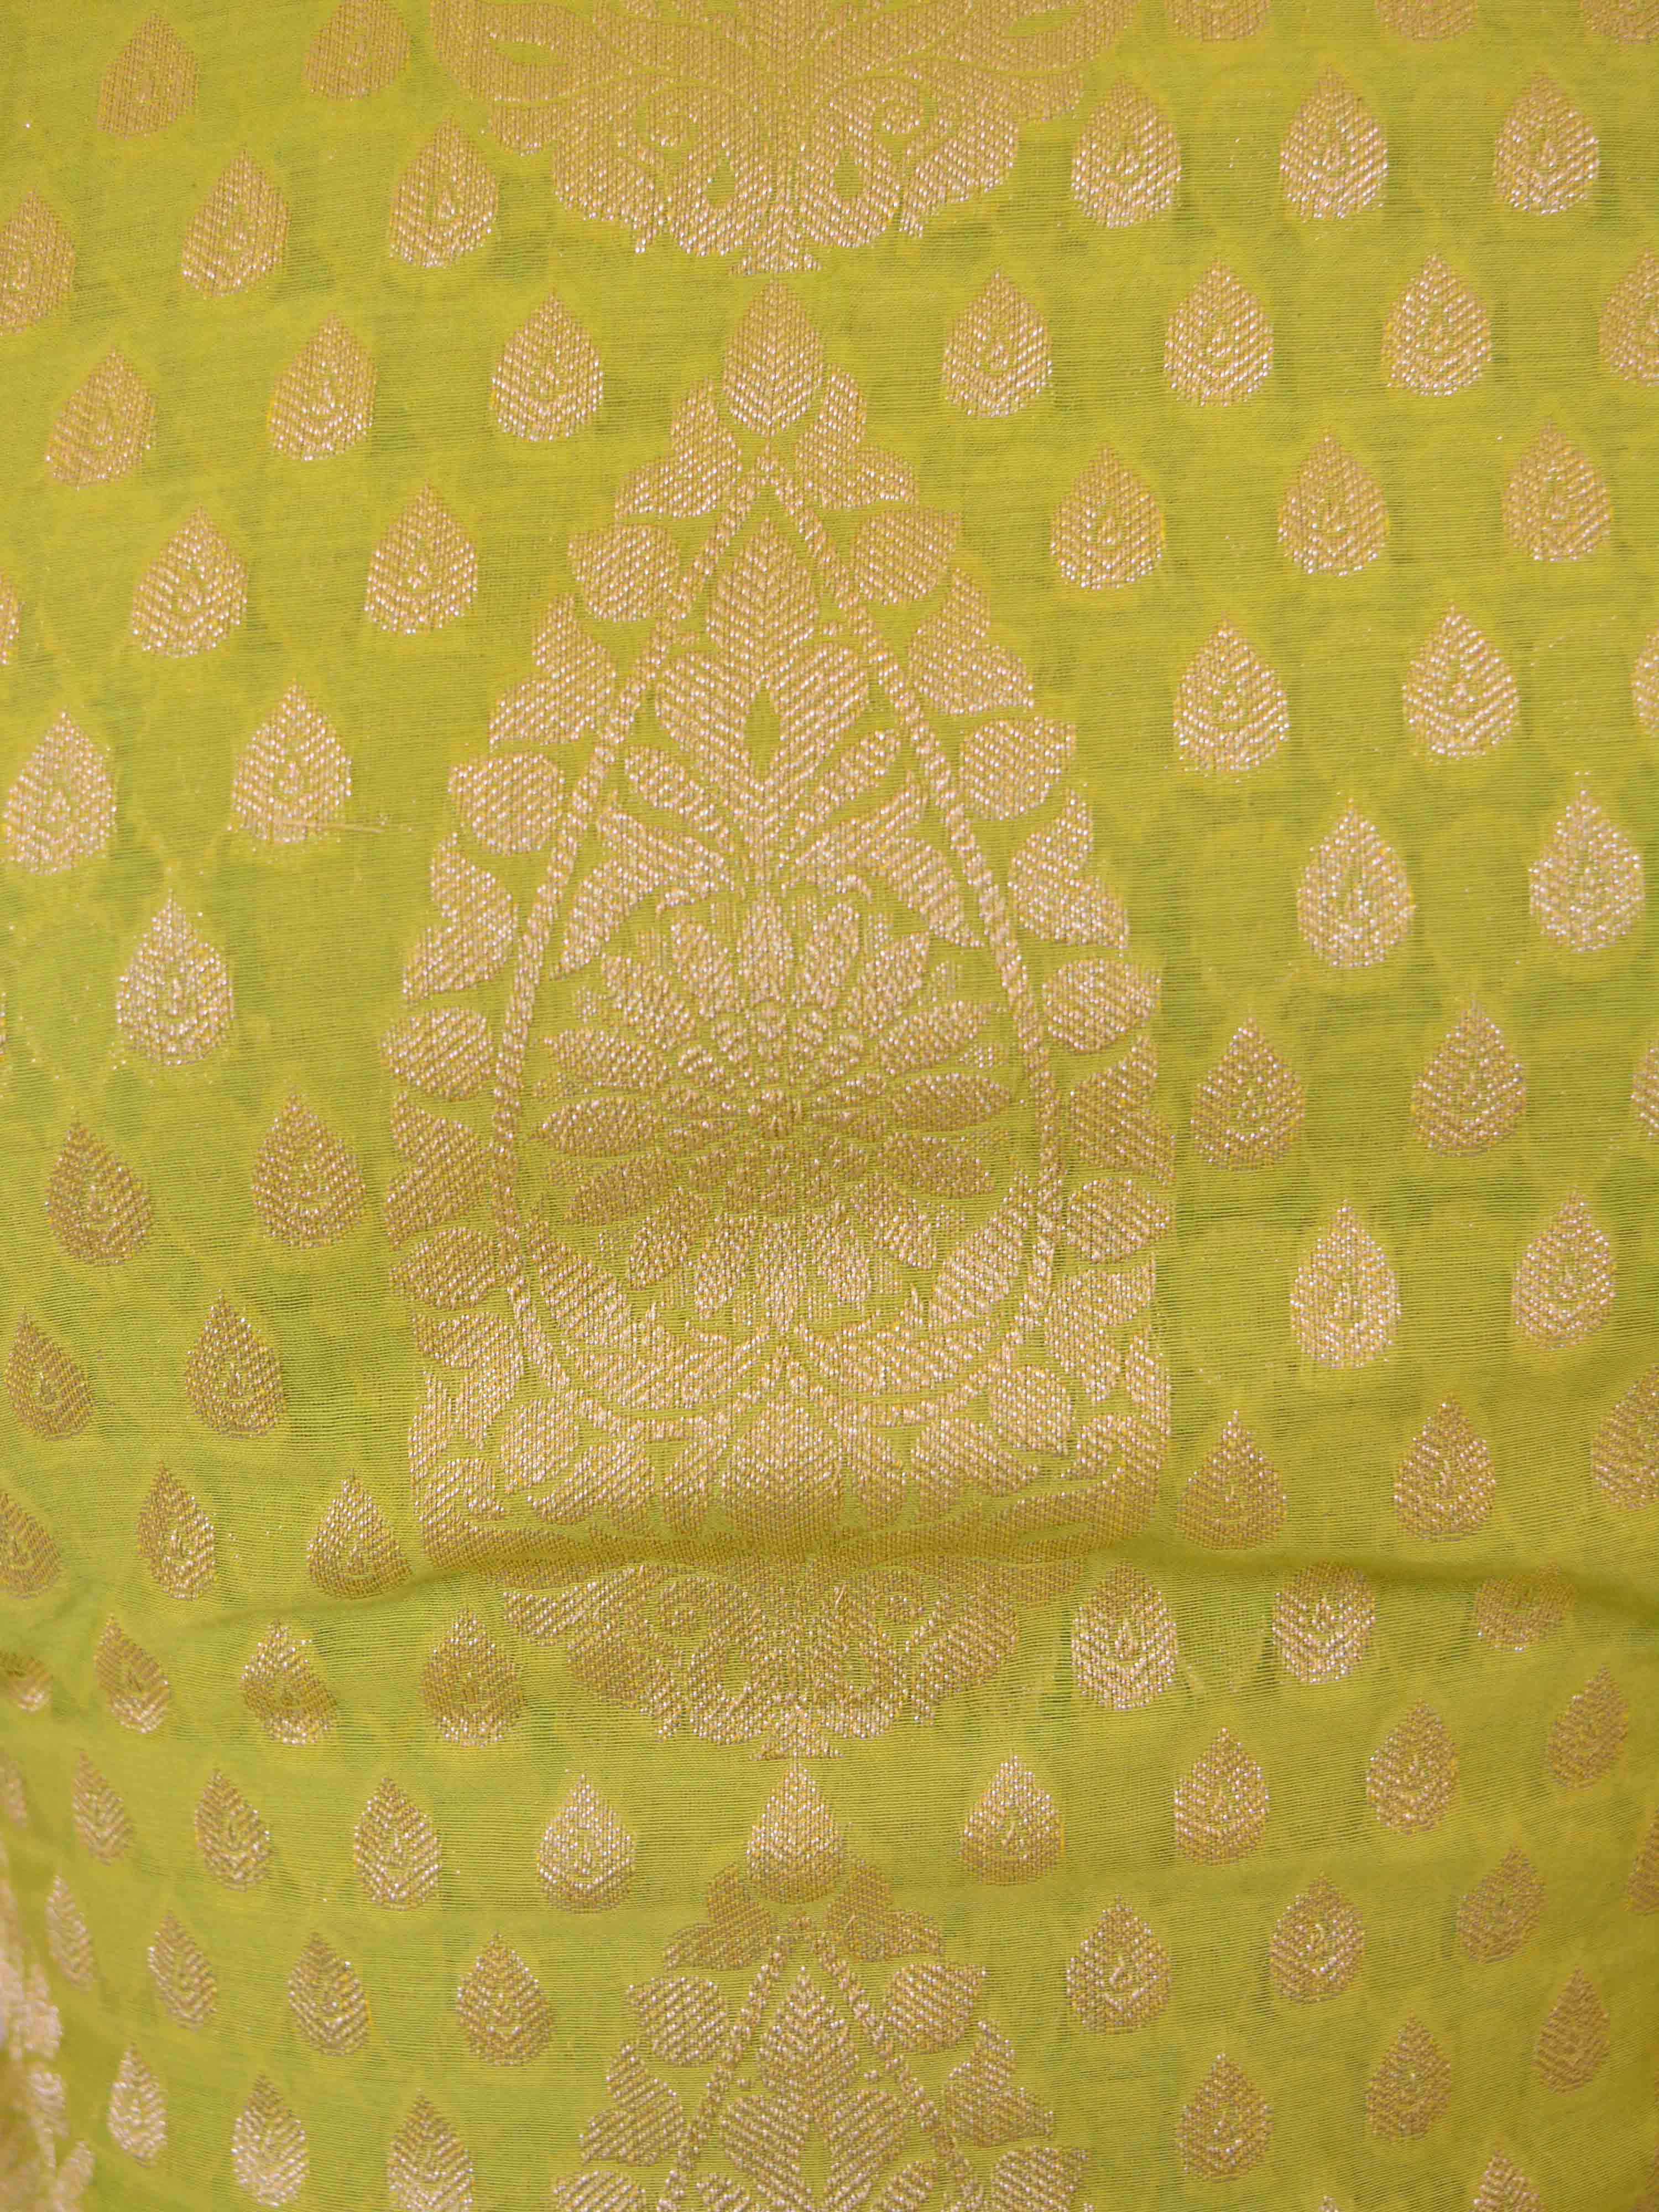 Banarasee Salwar Kameez Cotton Silk Gold Zari Buti Woven Fabric-Green